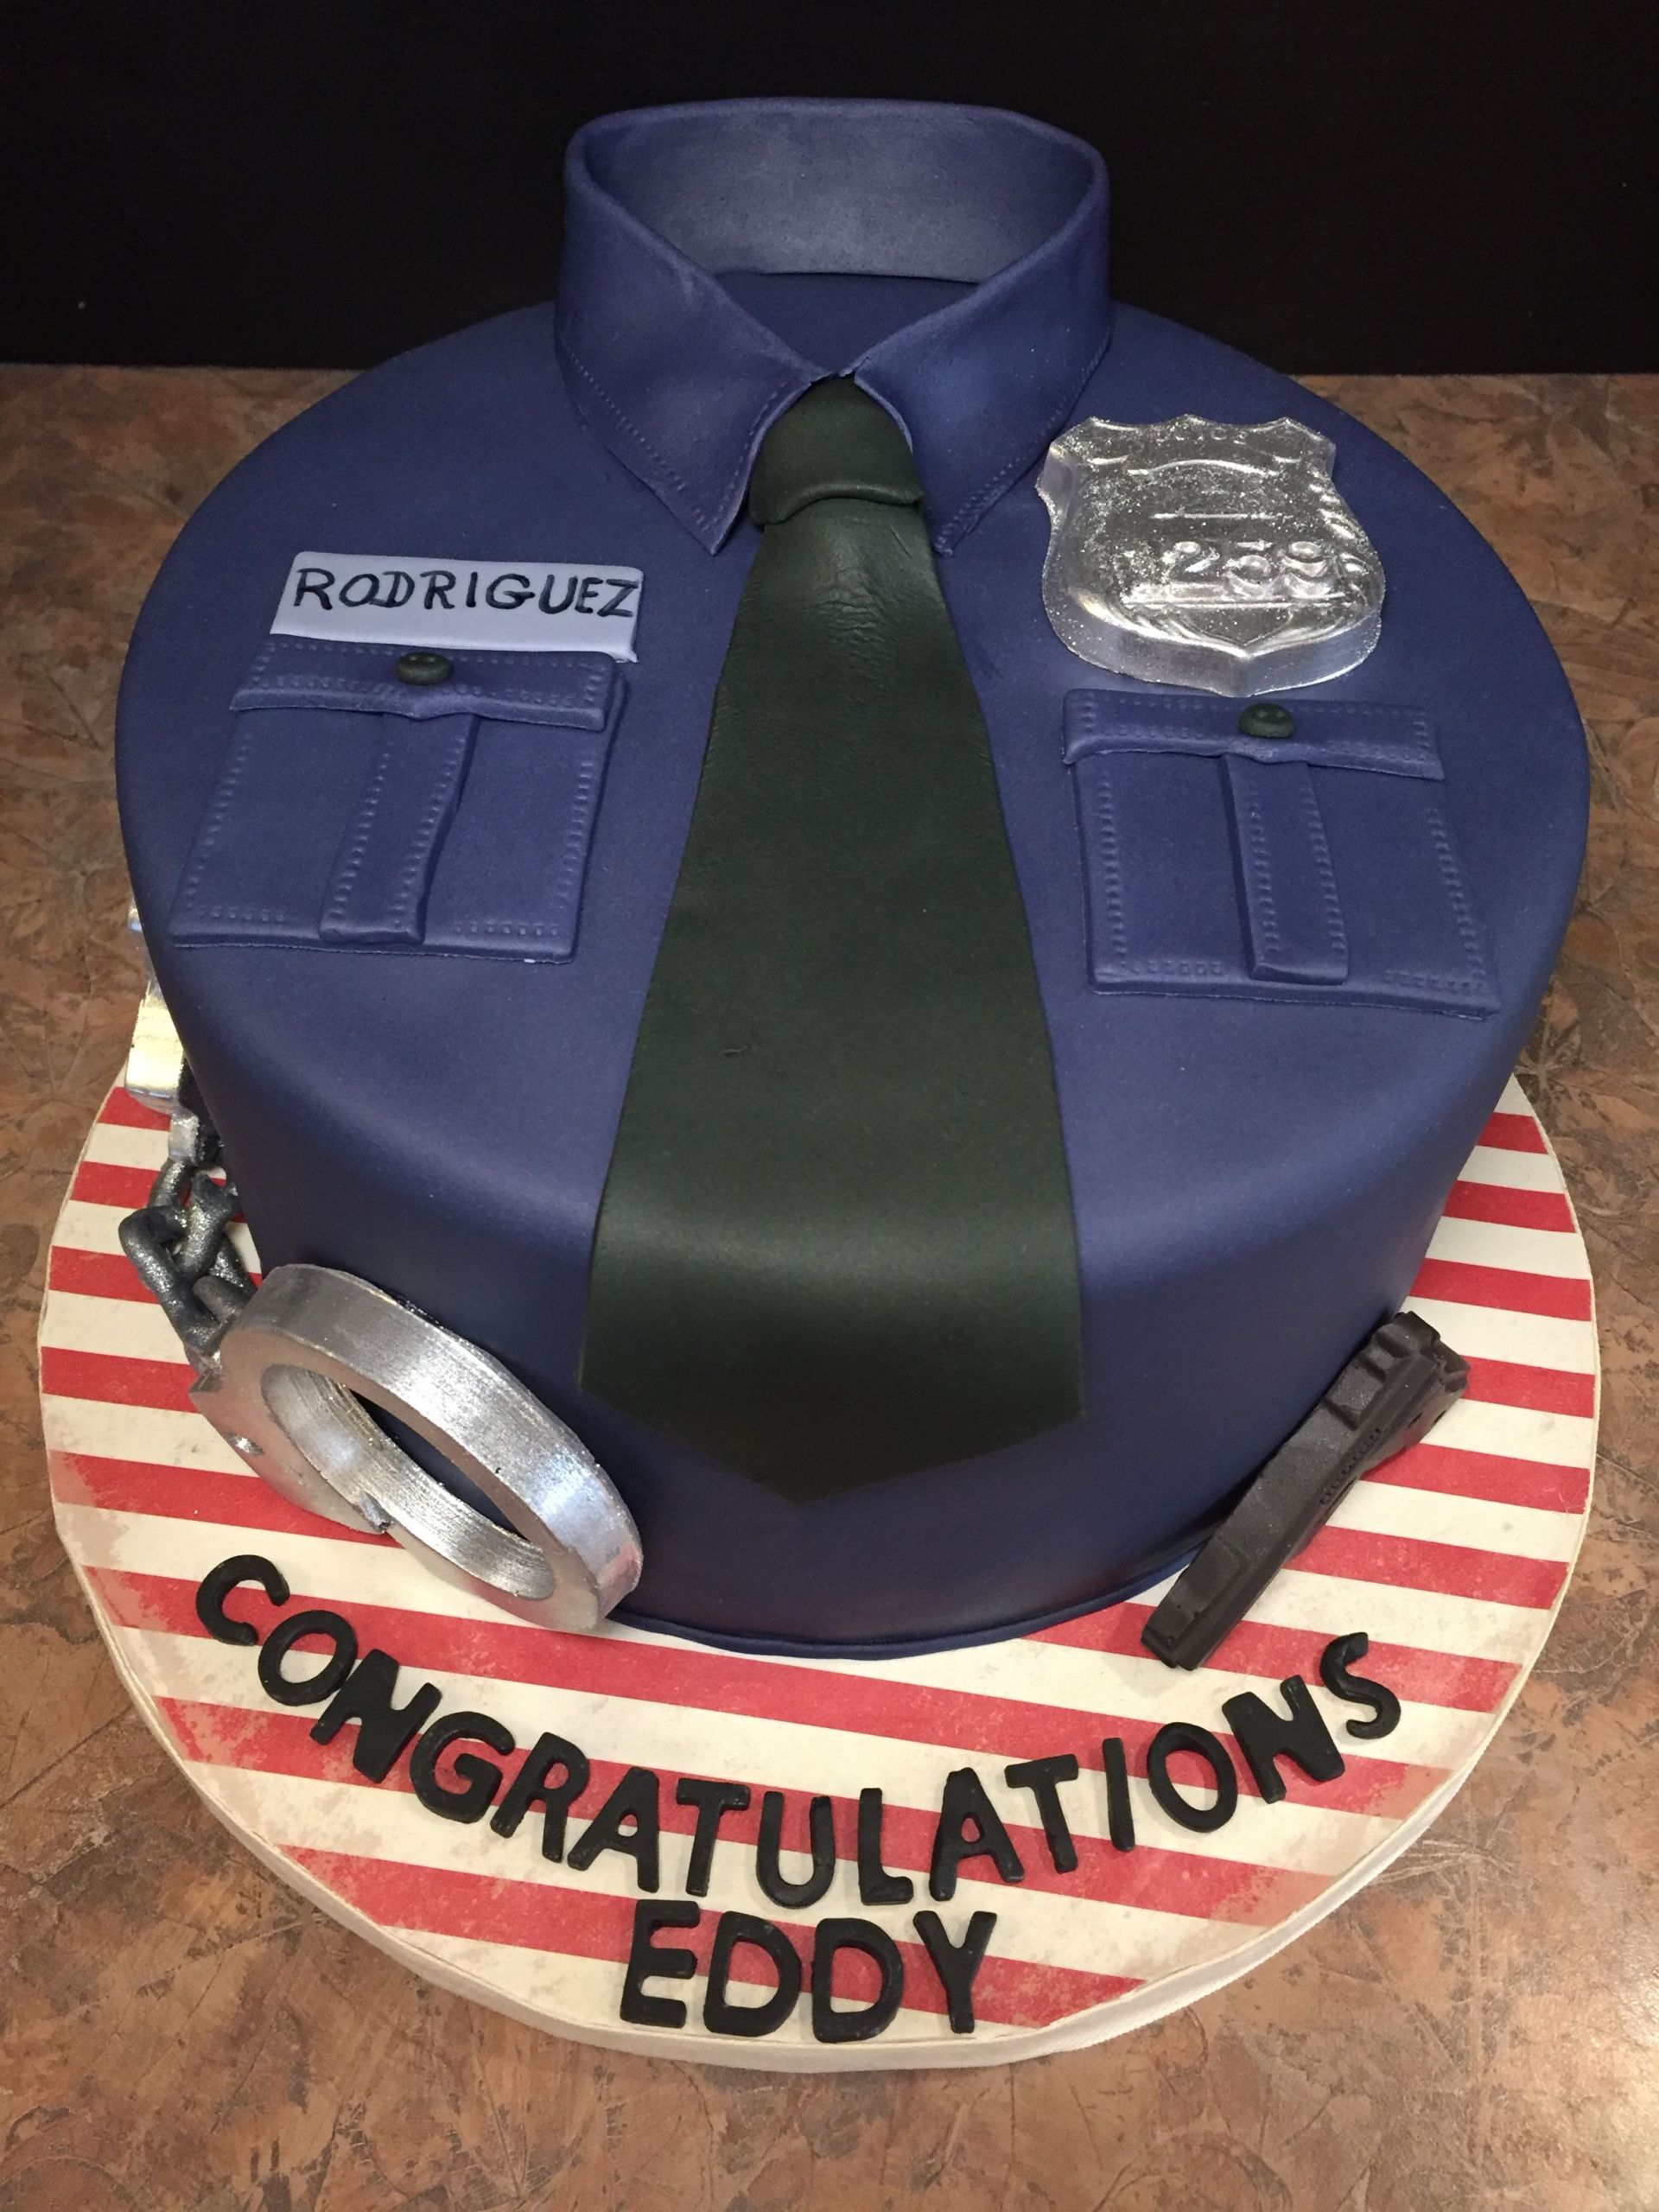 Police Academy Graduation Gift Ideas
 Eddy s Police Academy Graduation White cake with